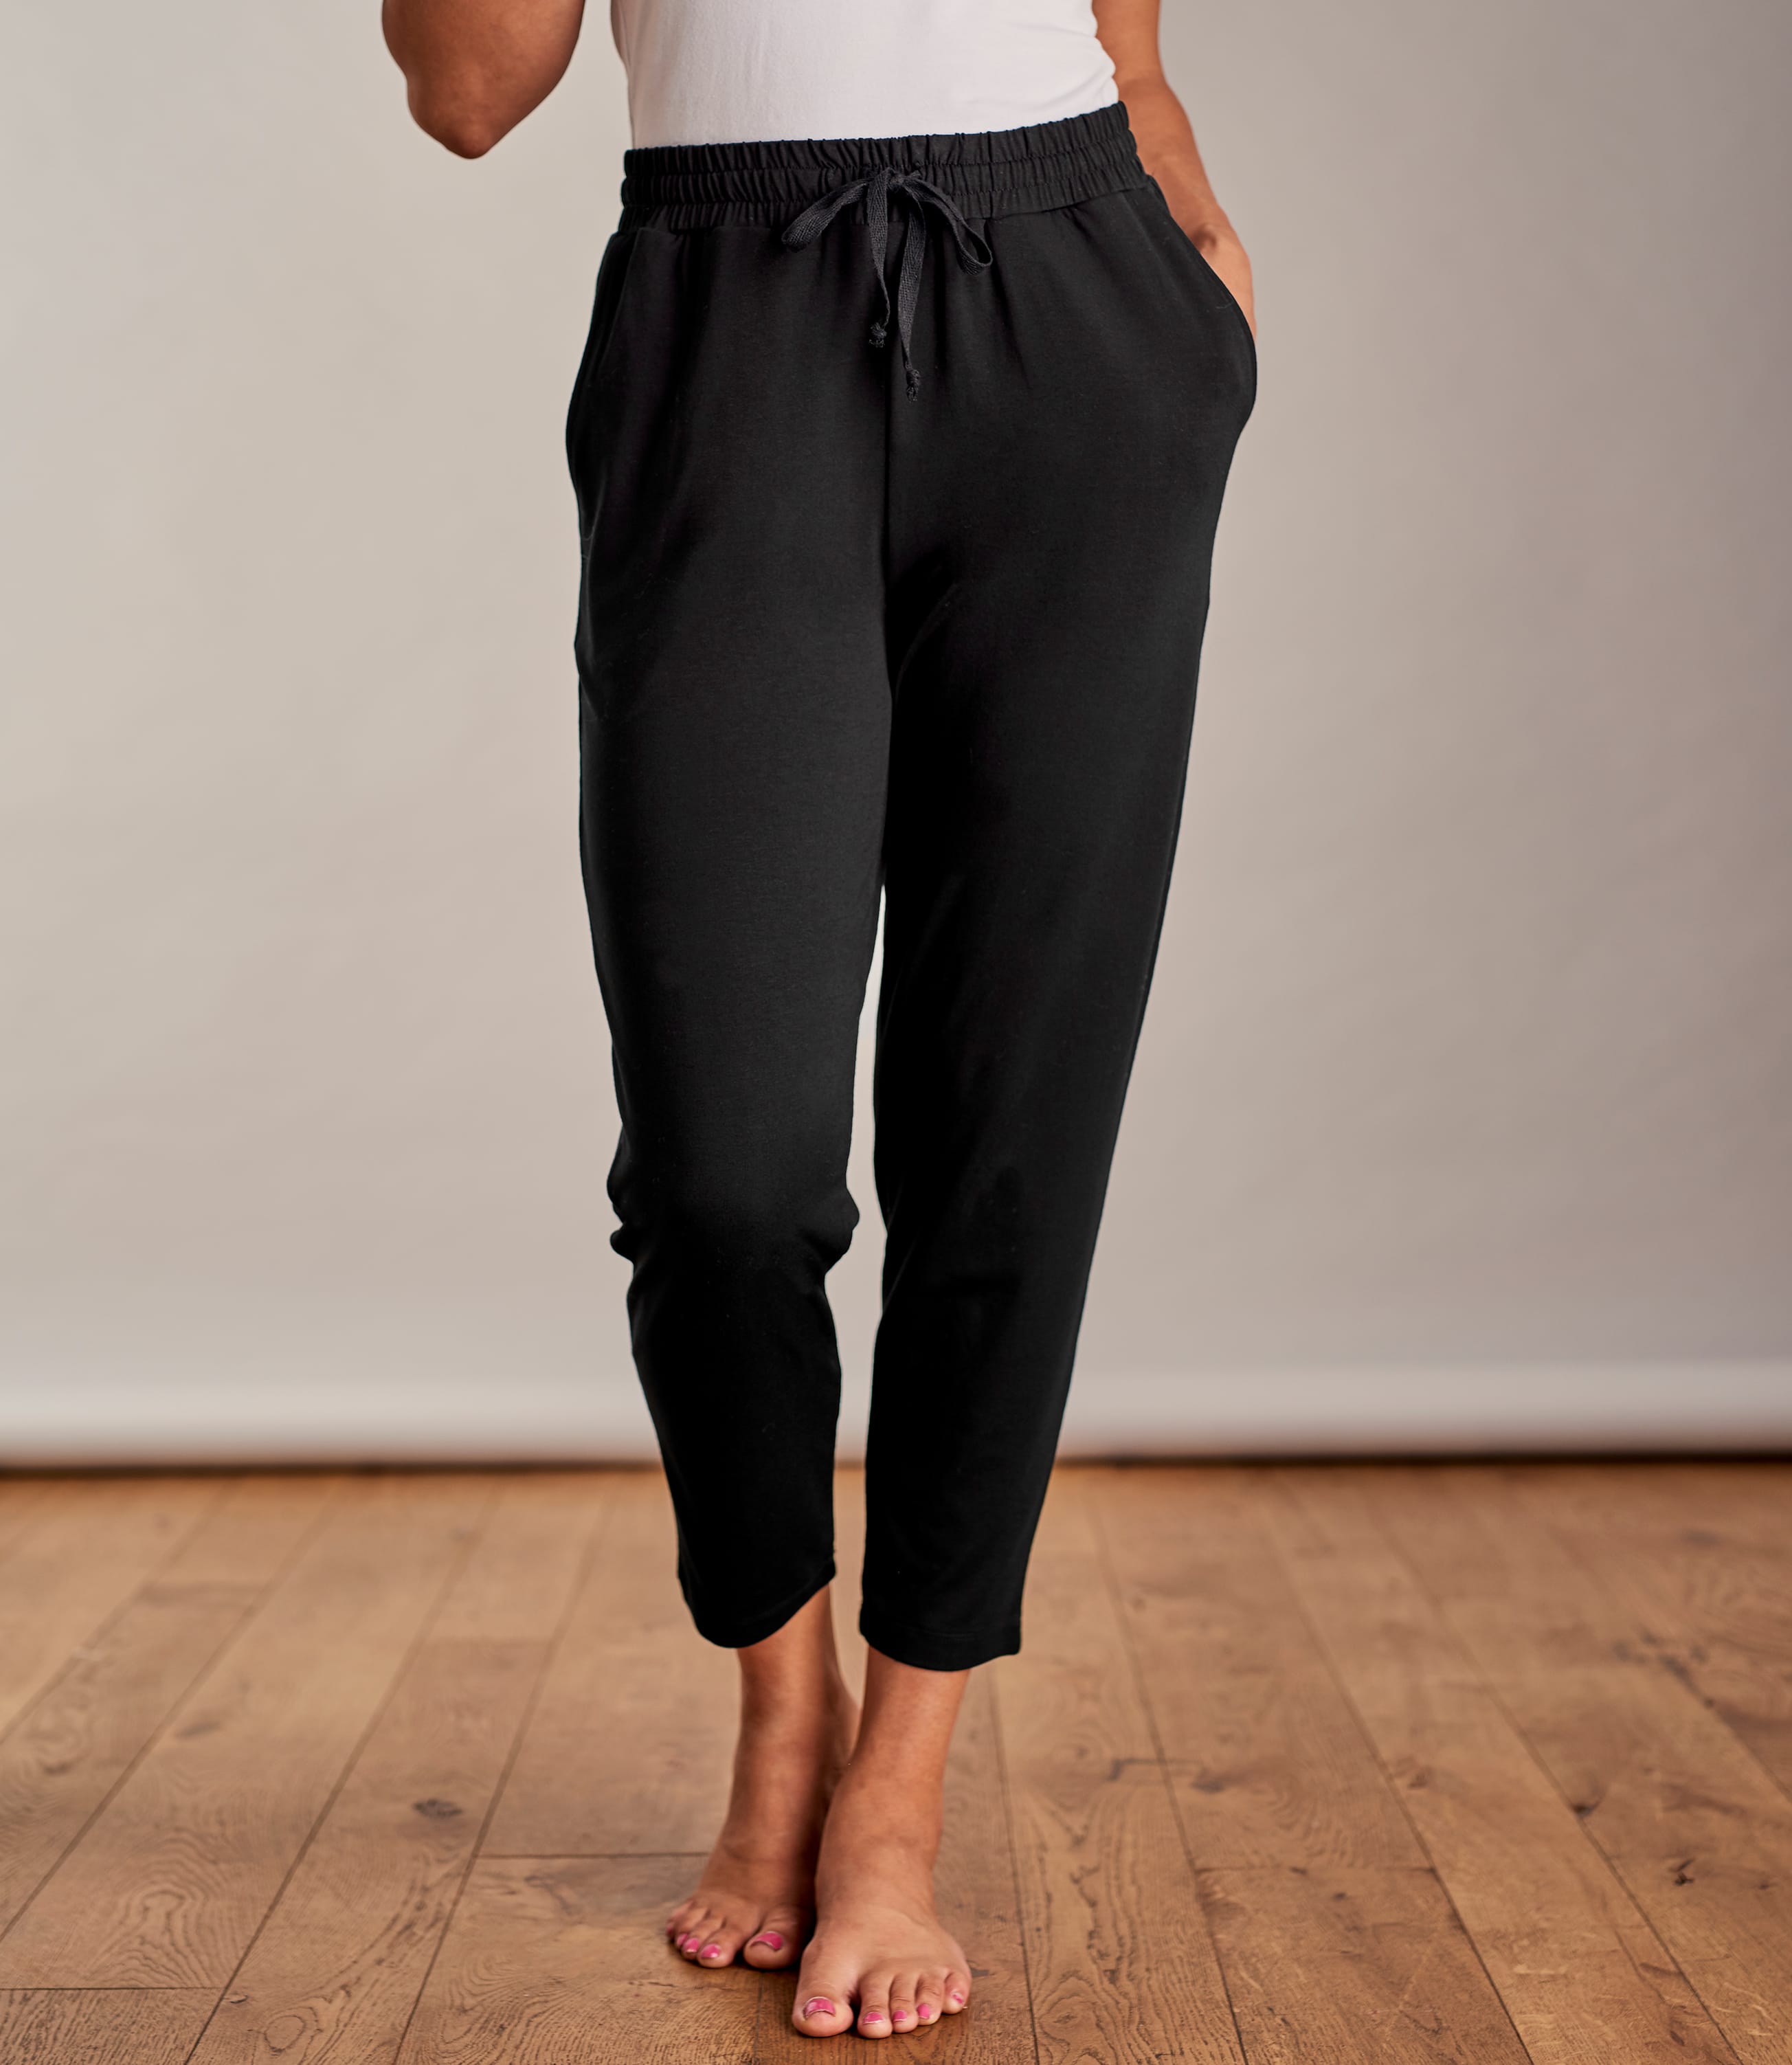 Pantalon détente - Femme - Jersey XS Noir ébène